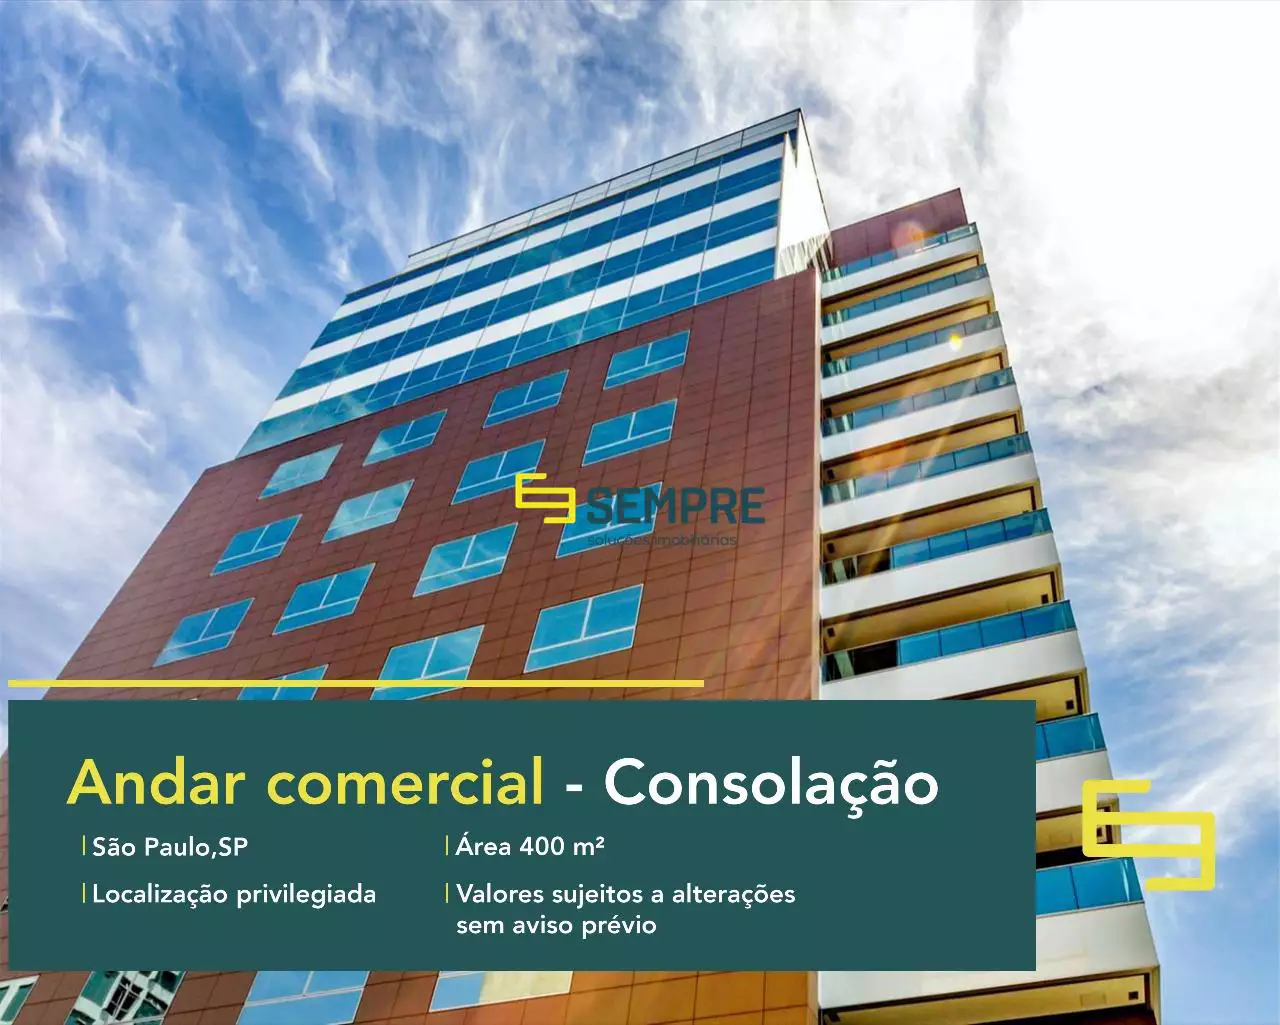 Andar comercial no Edifício Panamérica para locação - São Paulo, em excelente localização. O ponto comercial conta com área de 440 m².